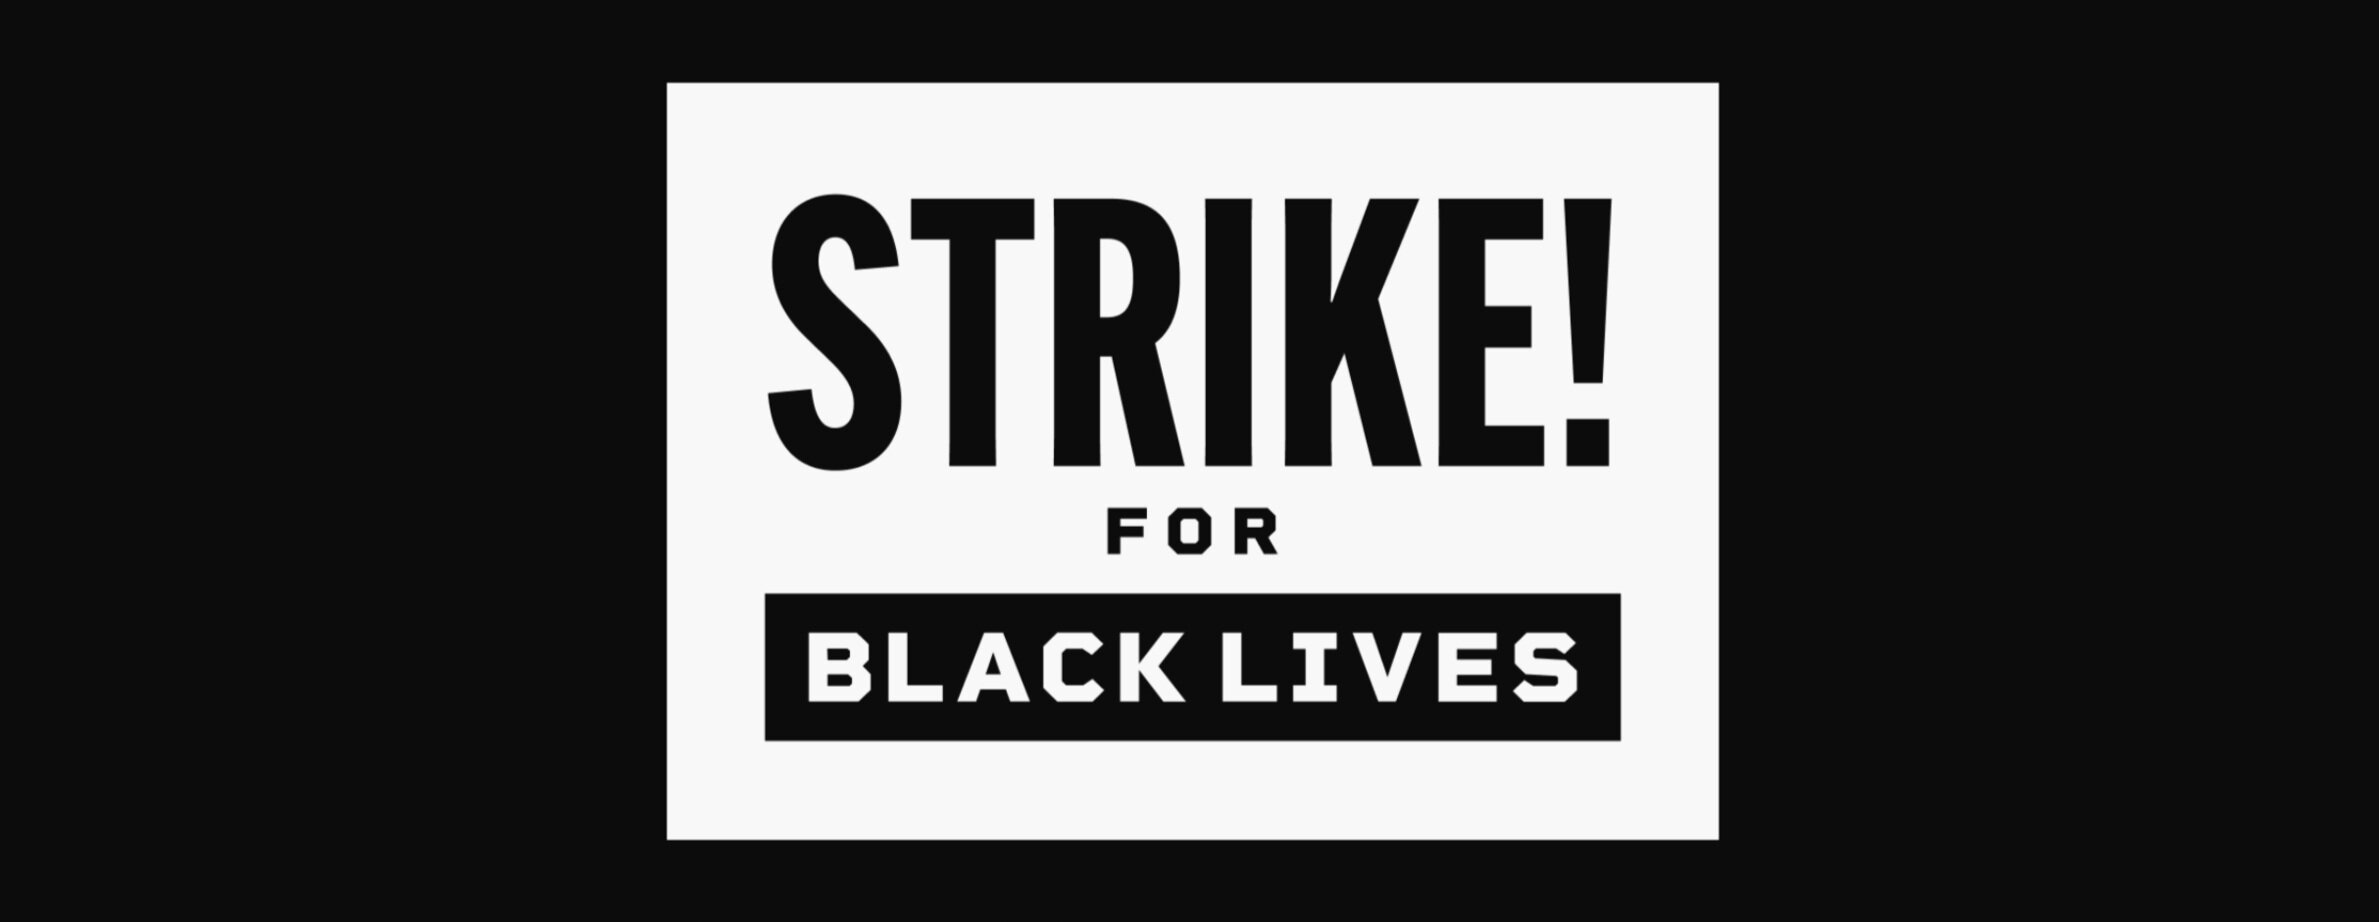 Strike-for-Black-Lives.png